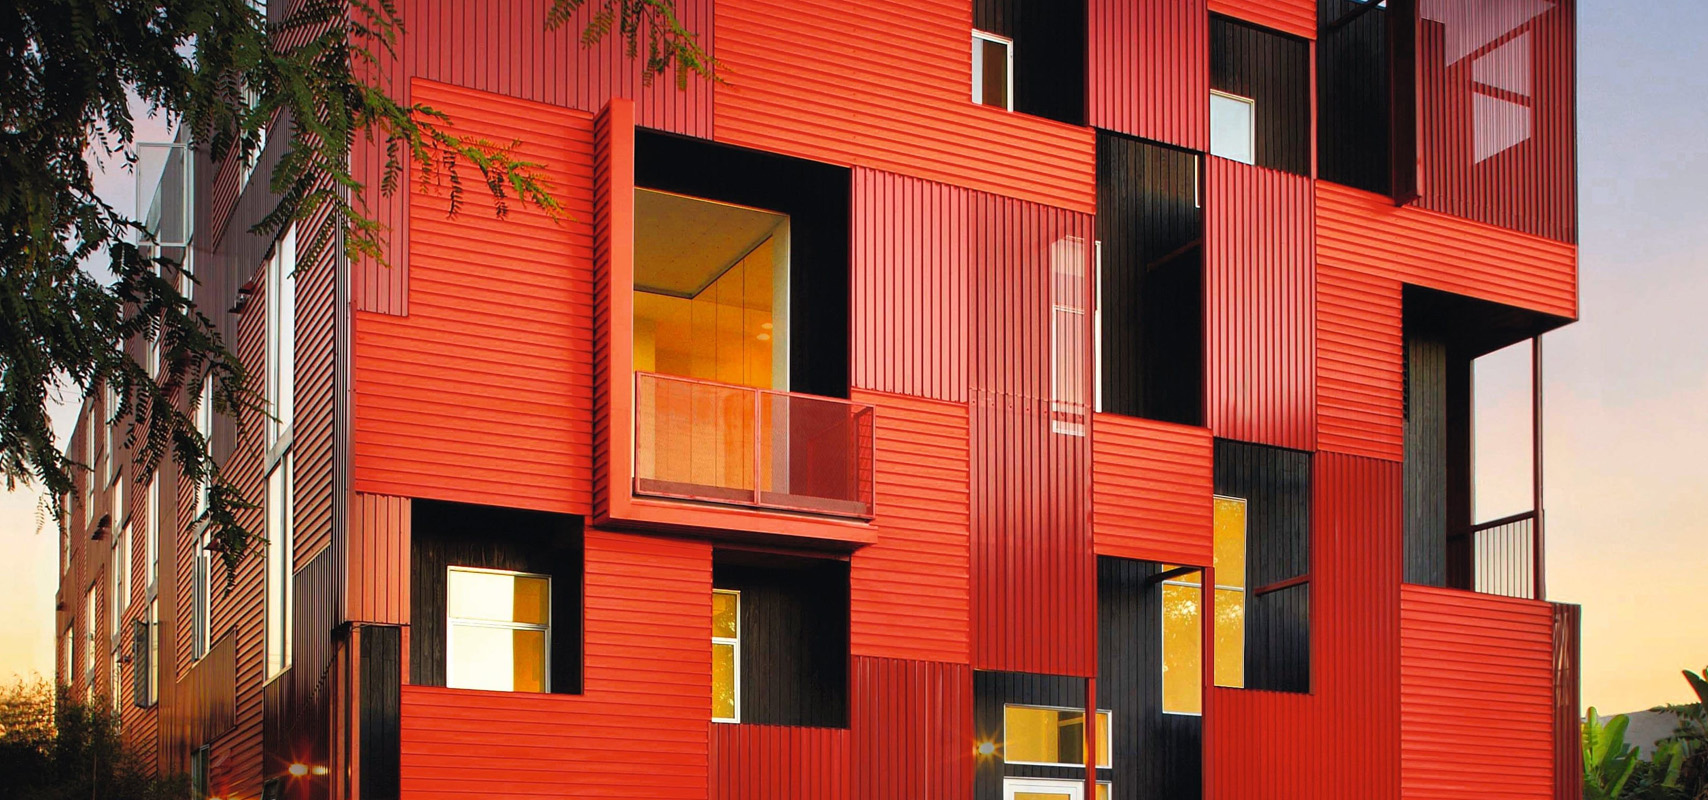 7 архитектурных шедевров в красном